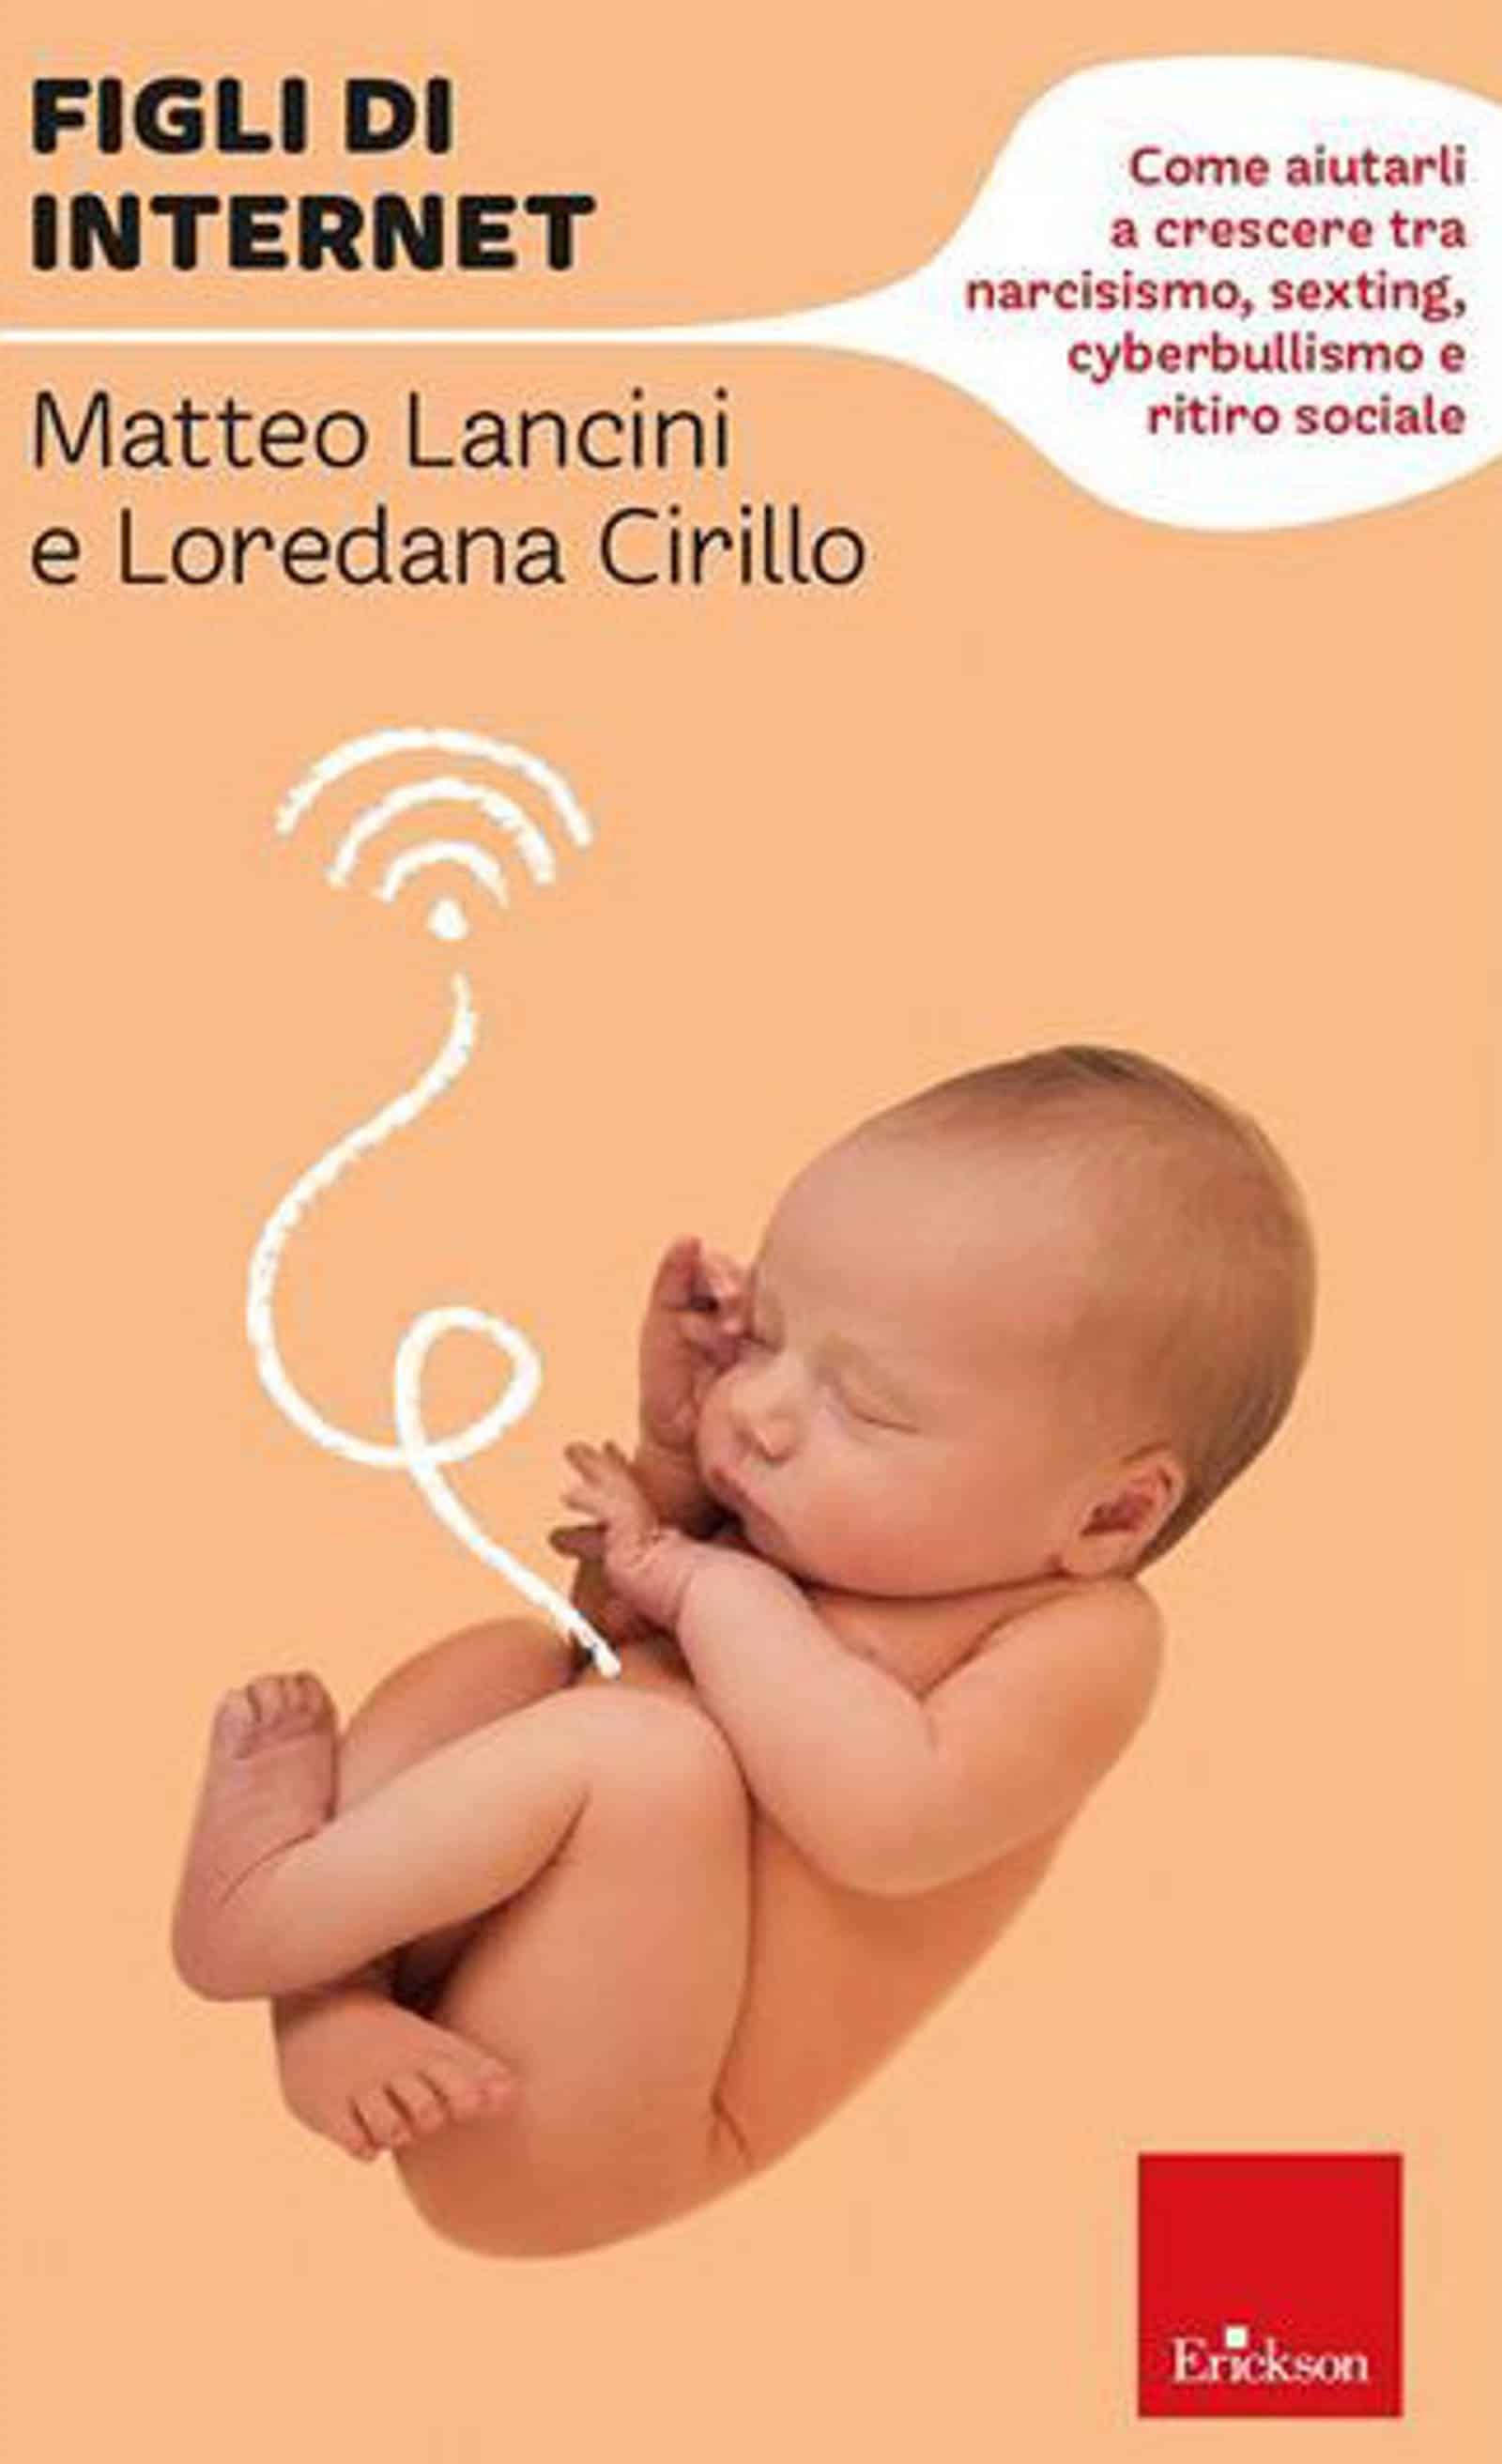 Figli di Internet 2022 di Matteo Lancini e Loredana Cirillo Recensione Featured